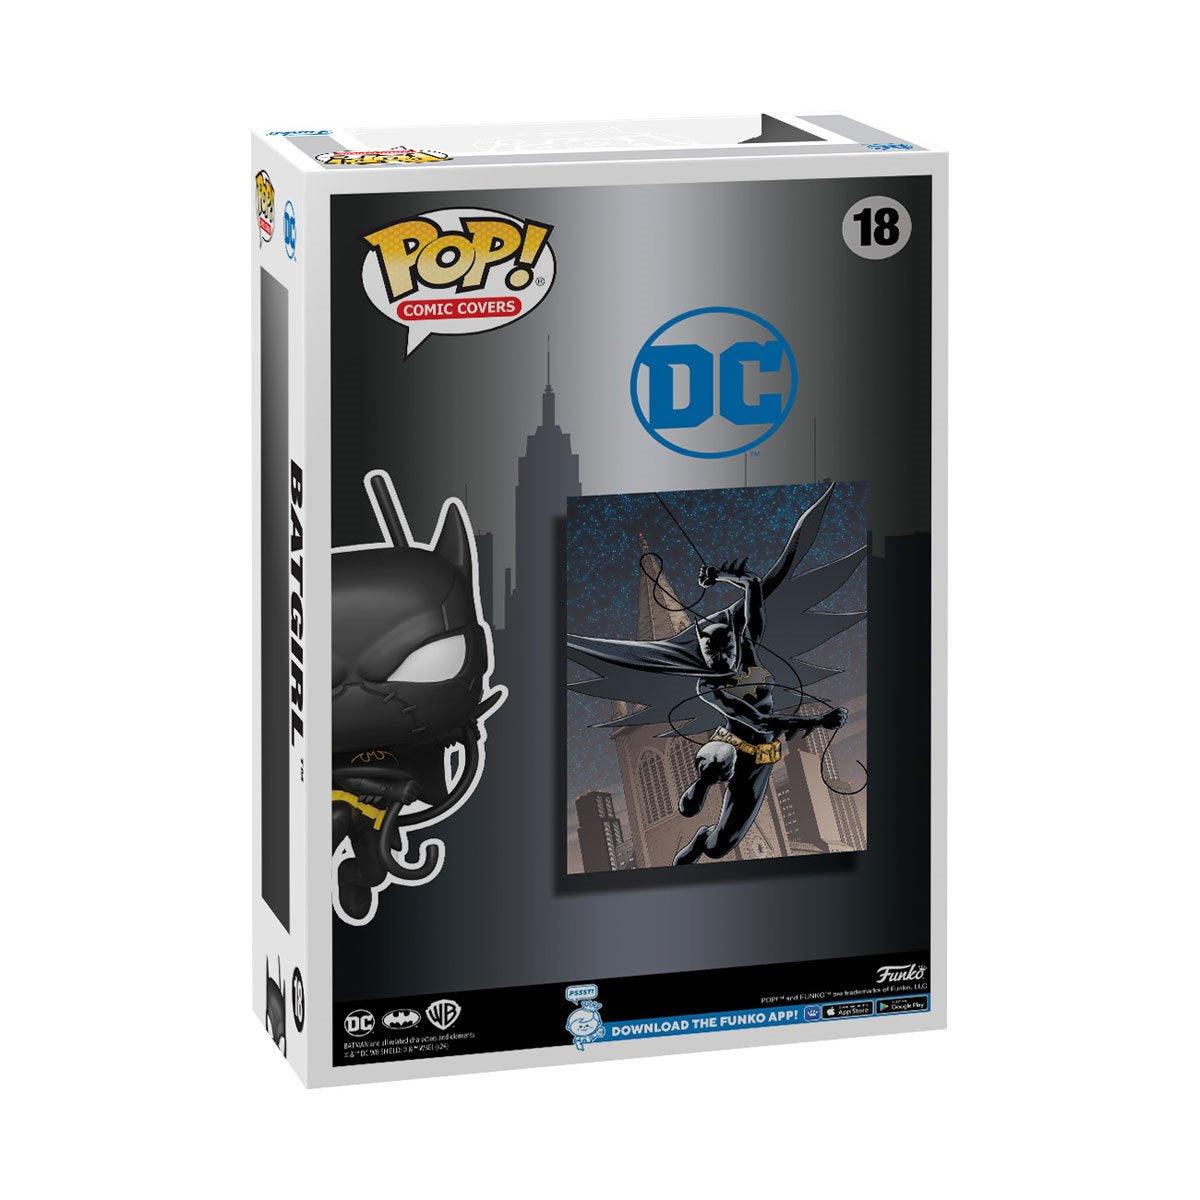  DC Comics - Batgirl Pop! Comic Cover - Funko - Titan Pop Culture